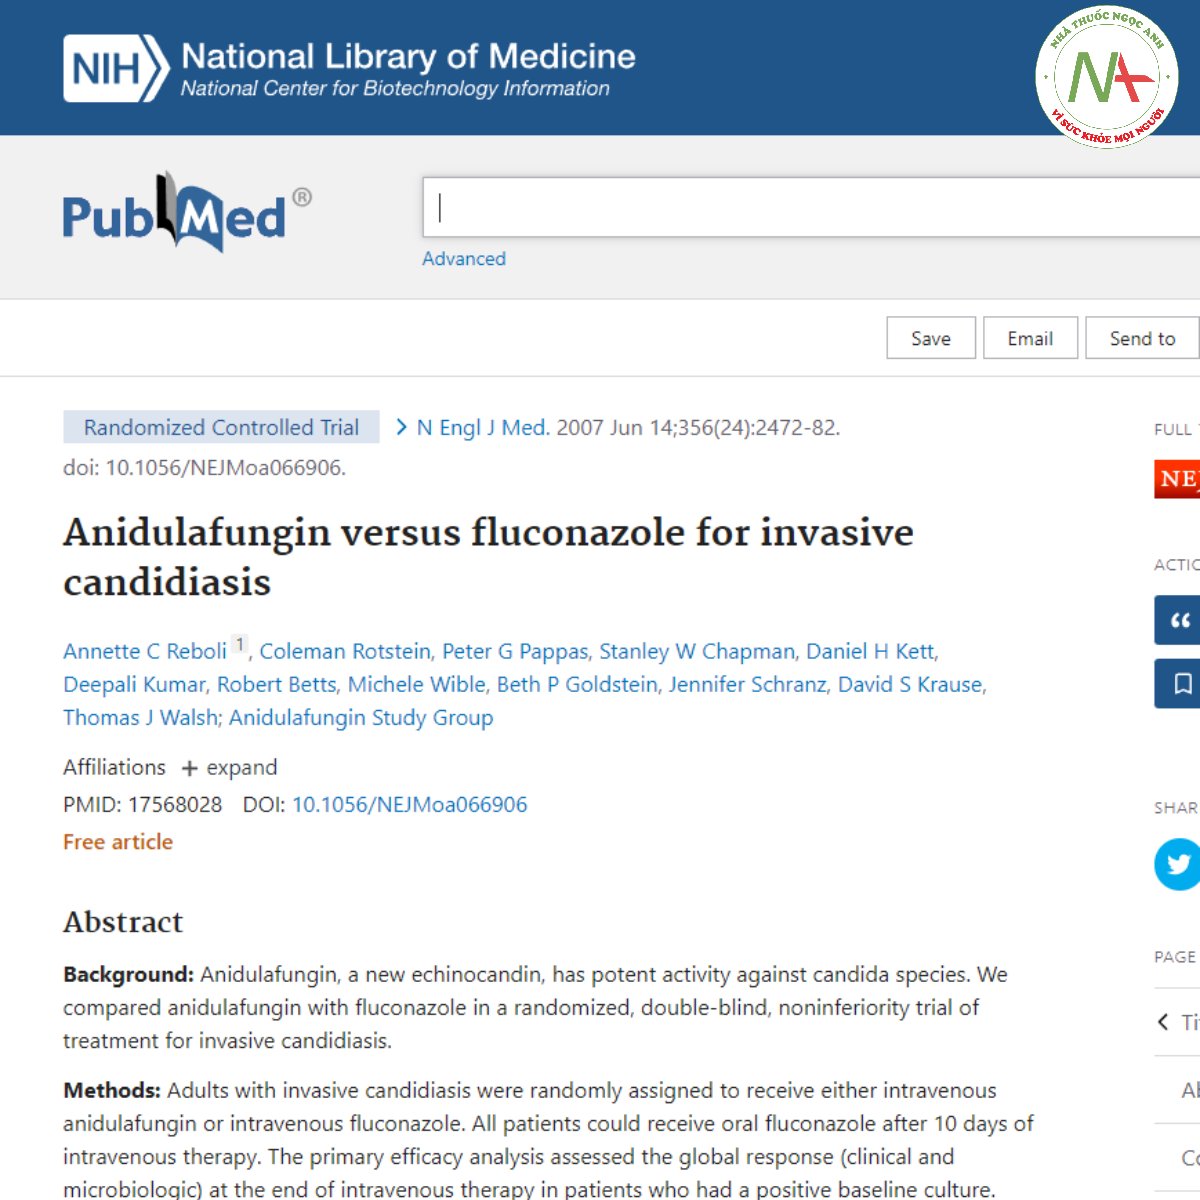 Anidulafungin versus fluconazole for invasive candidiasis